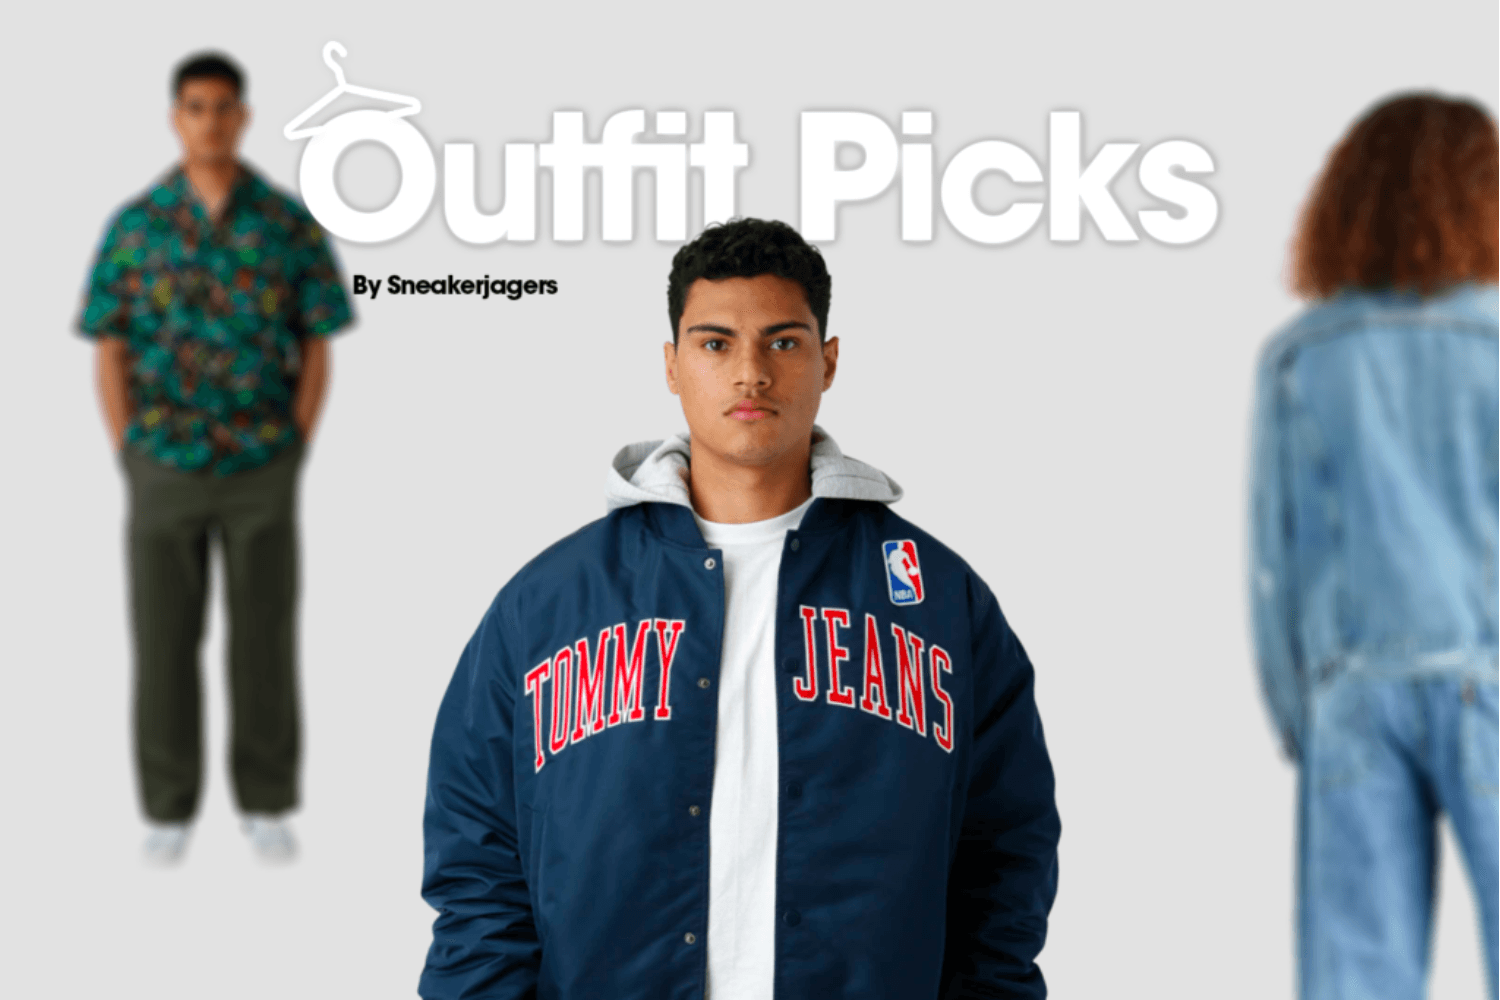 Outfit Picks by Sneakerjagers - week 18